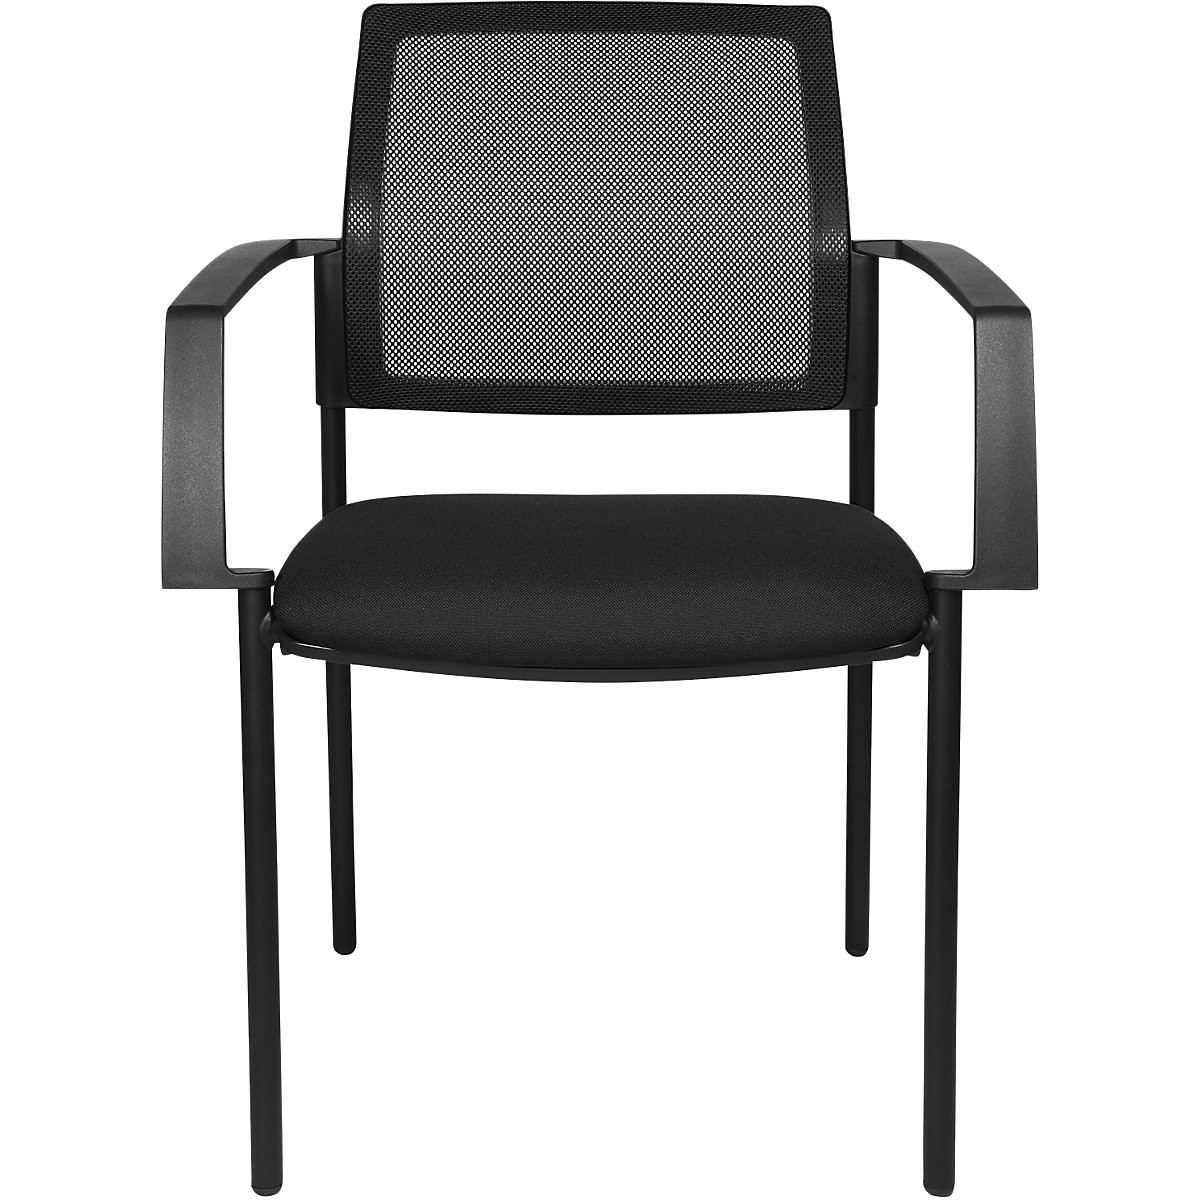 Síťovaná stohovací židle – Topstar, 4 nohy, bal.j. 2 ks, černý sedák, černý podstavec-6